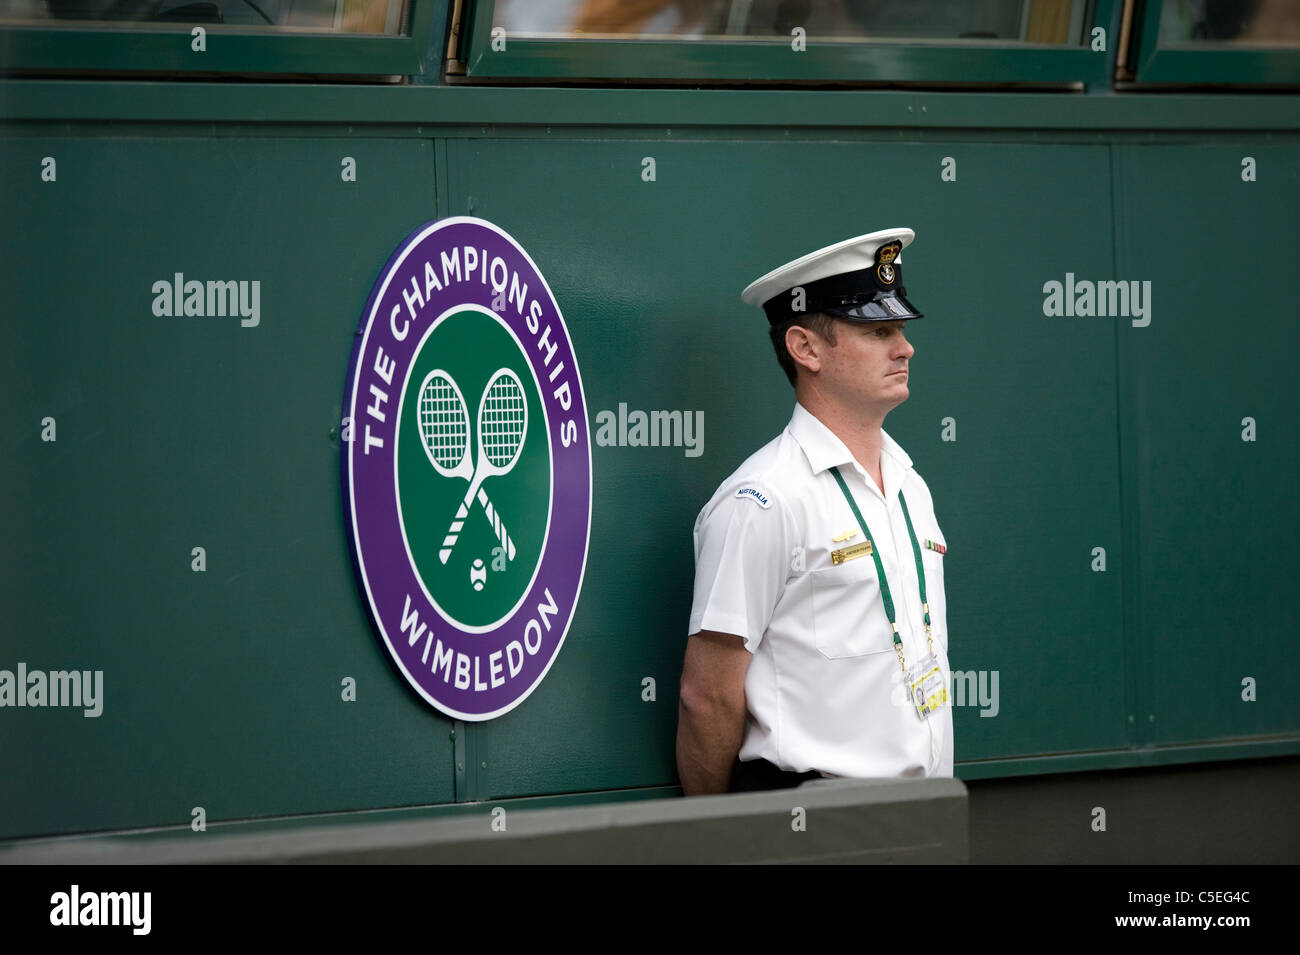 Un service steward sur le Court central lors de l'édition 2011 des Championnats de tennis de Wimbledon Banque D'Images